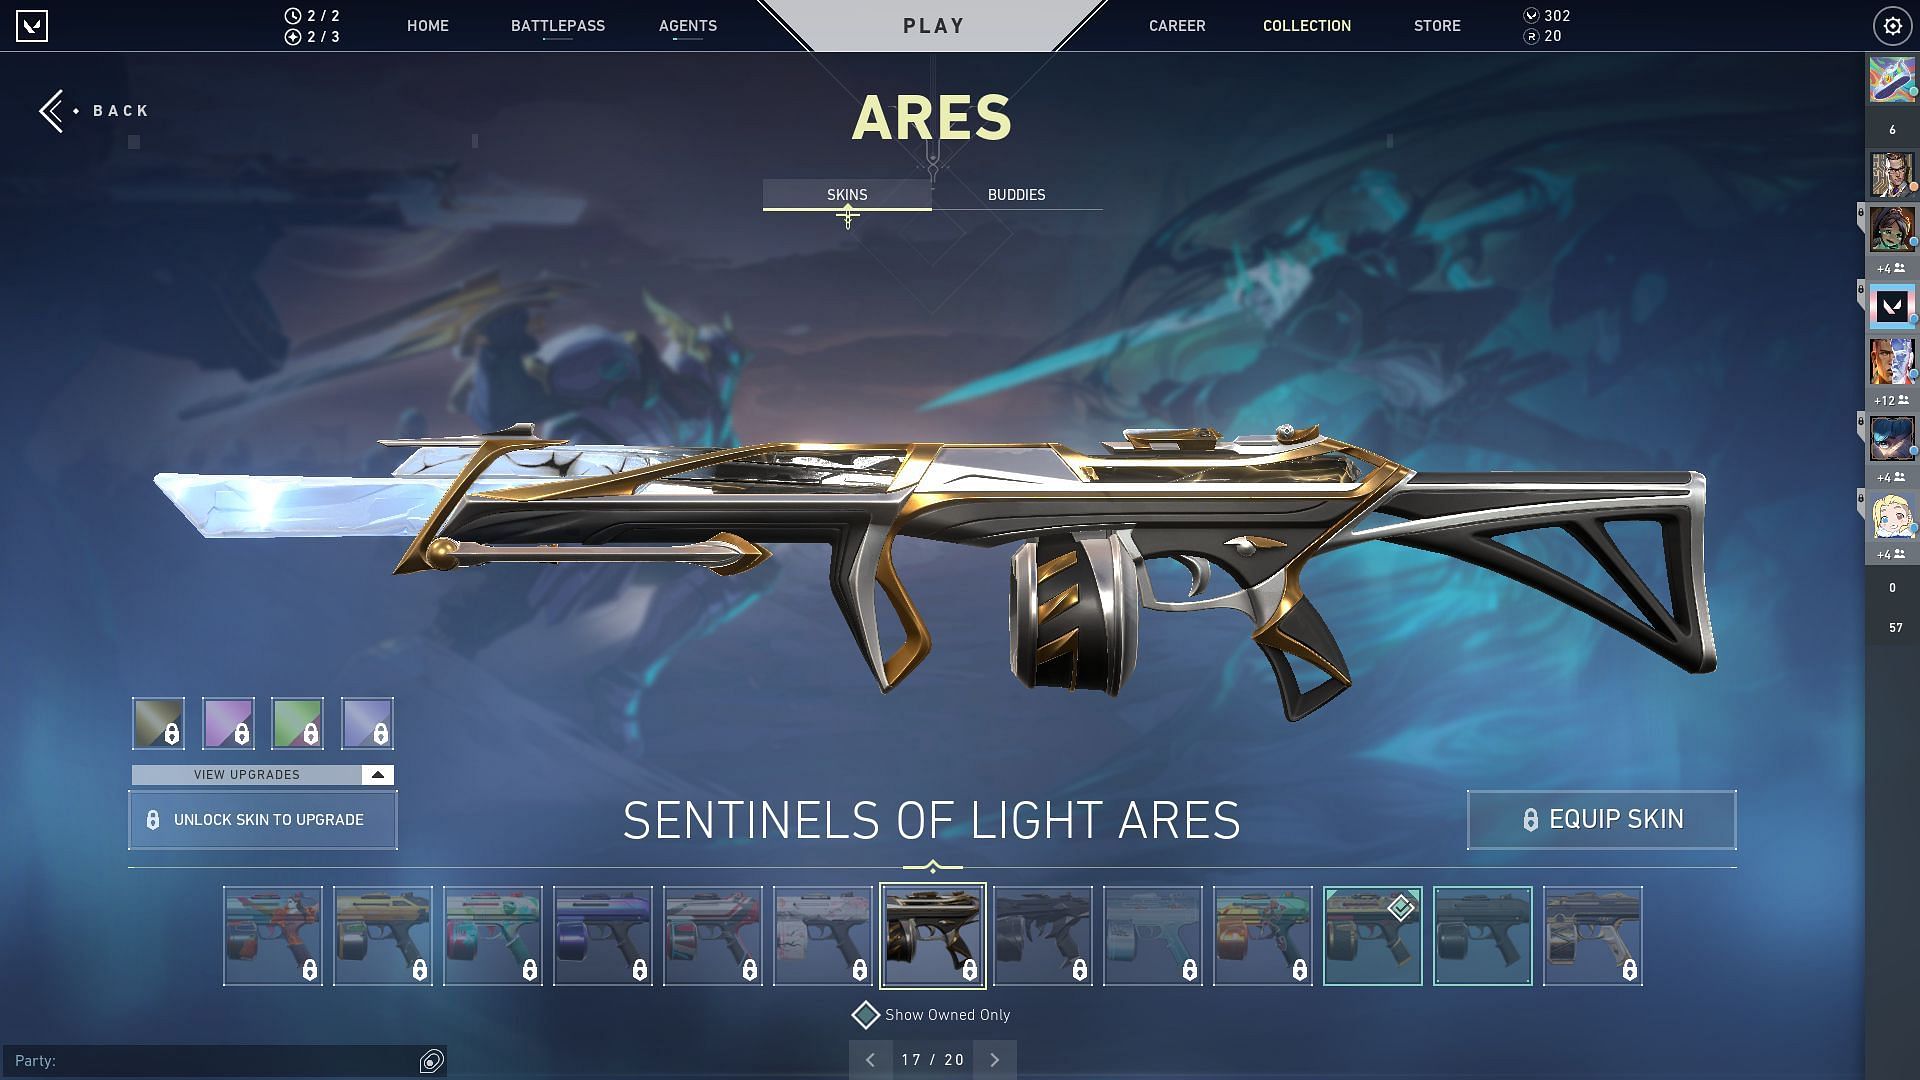 Sentinels of Light Ares (Image via Sportskeeda)